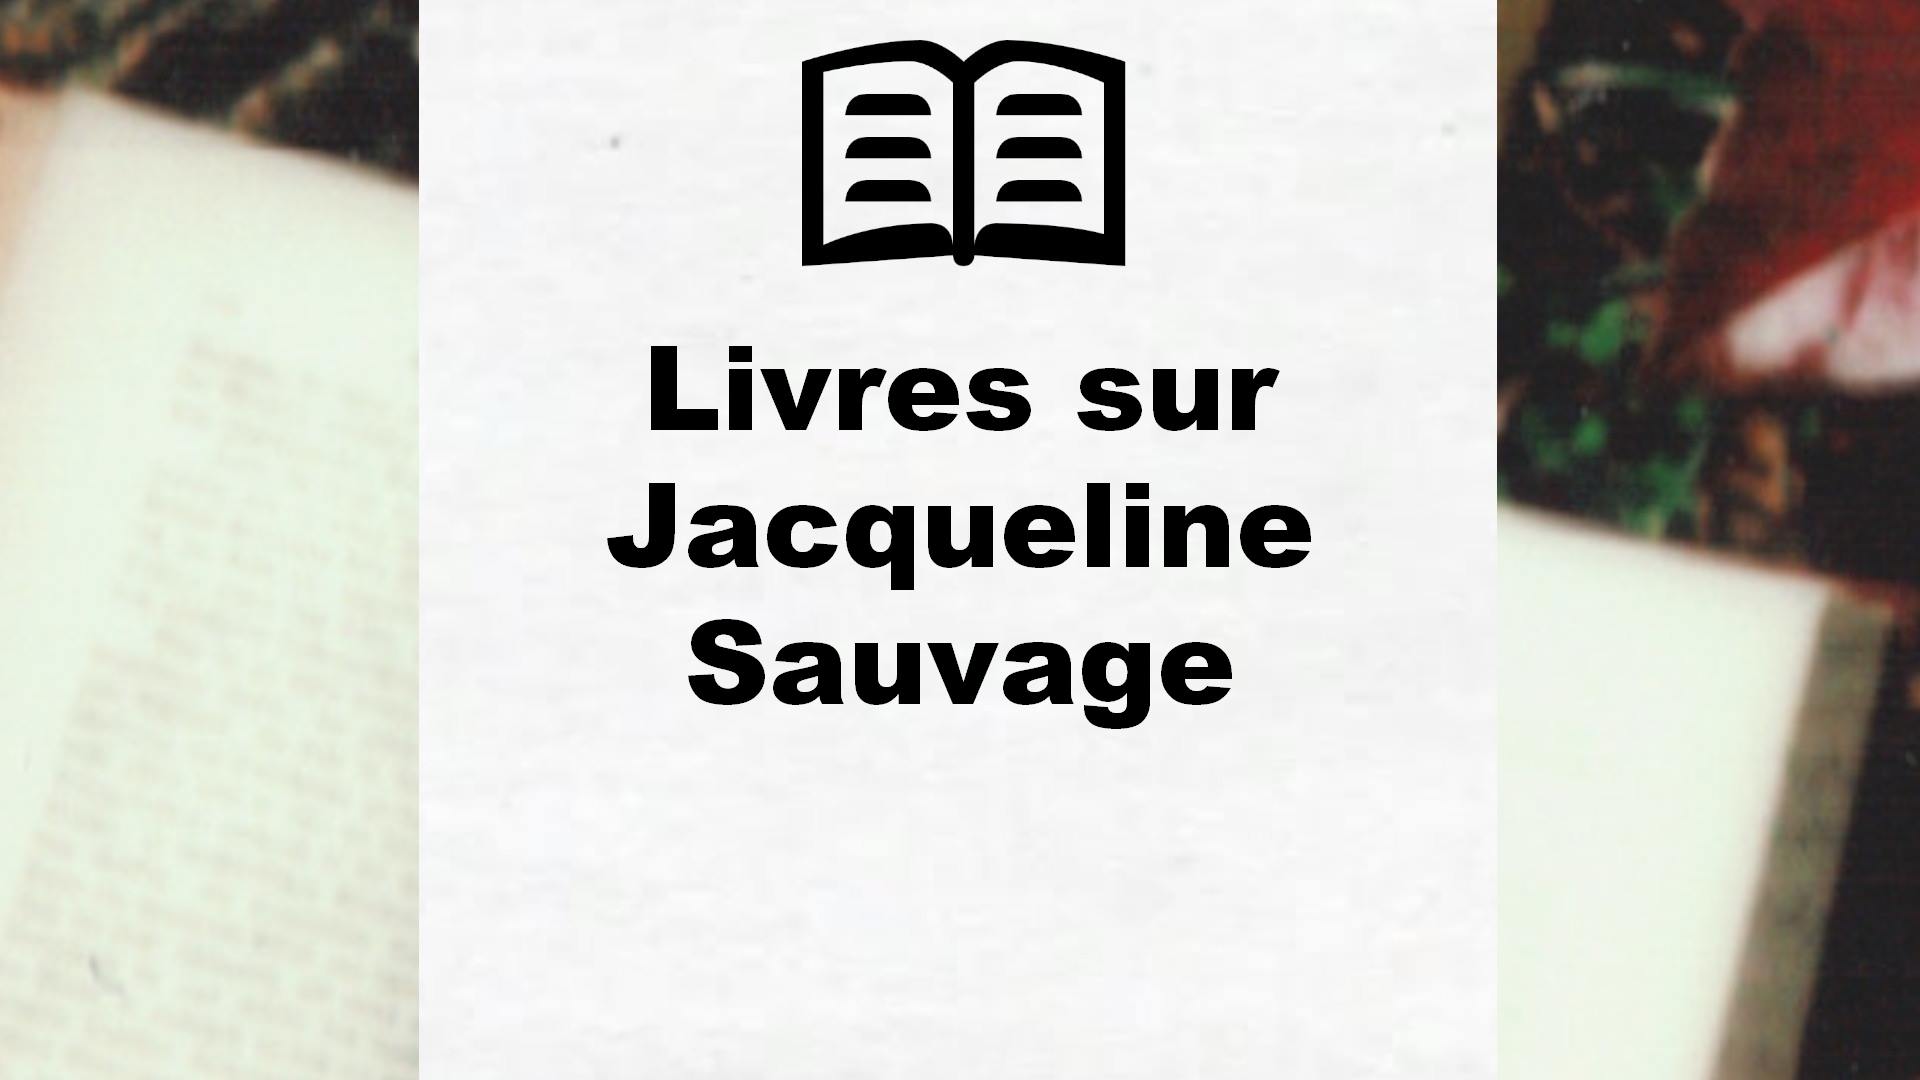 Livres sur Jacqueline Sauvage